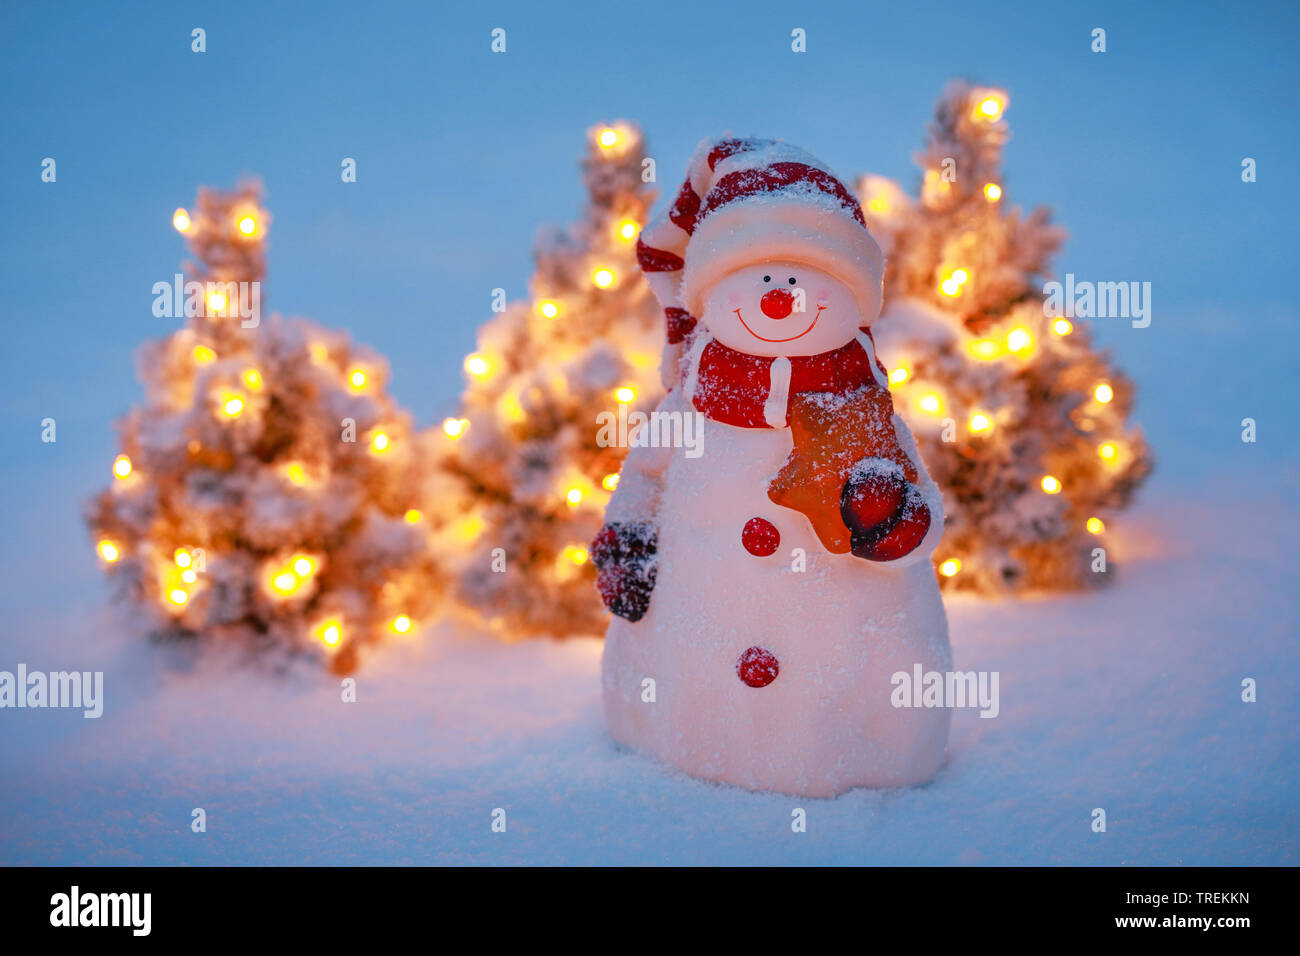 Pupazzo di neve e illuminato piccoli alberi di Natale nella neve Foto Stock